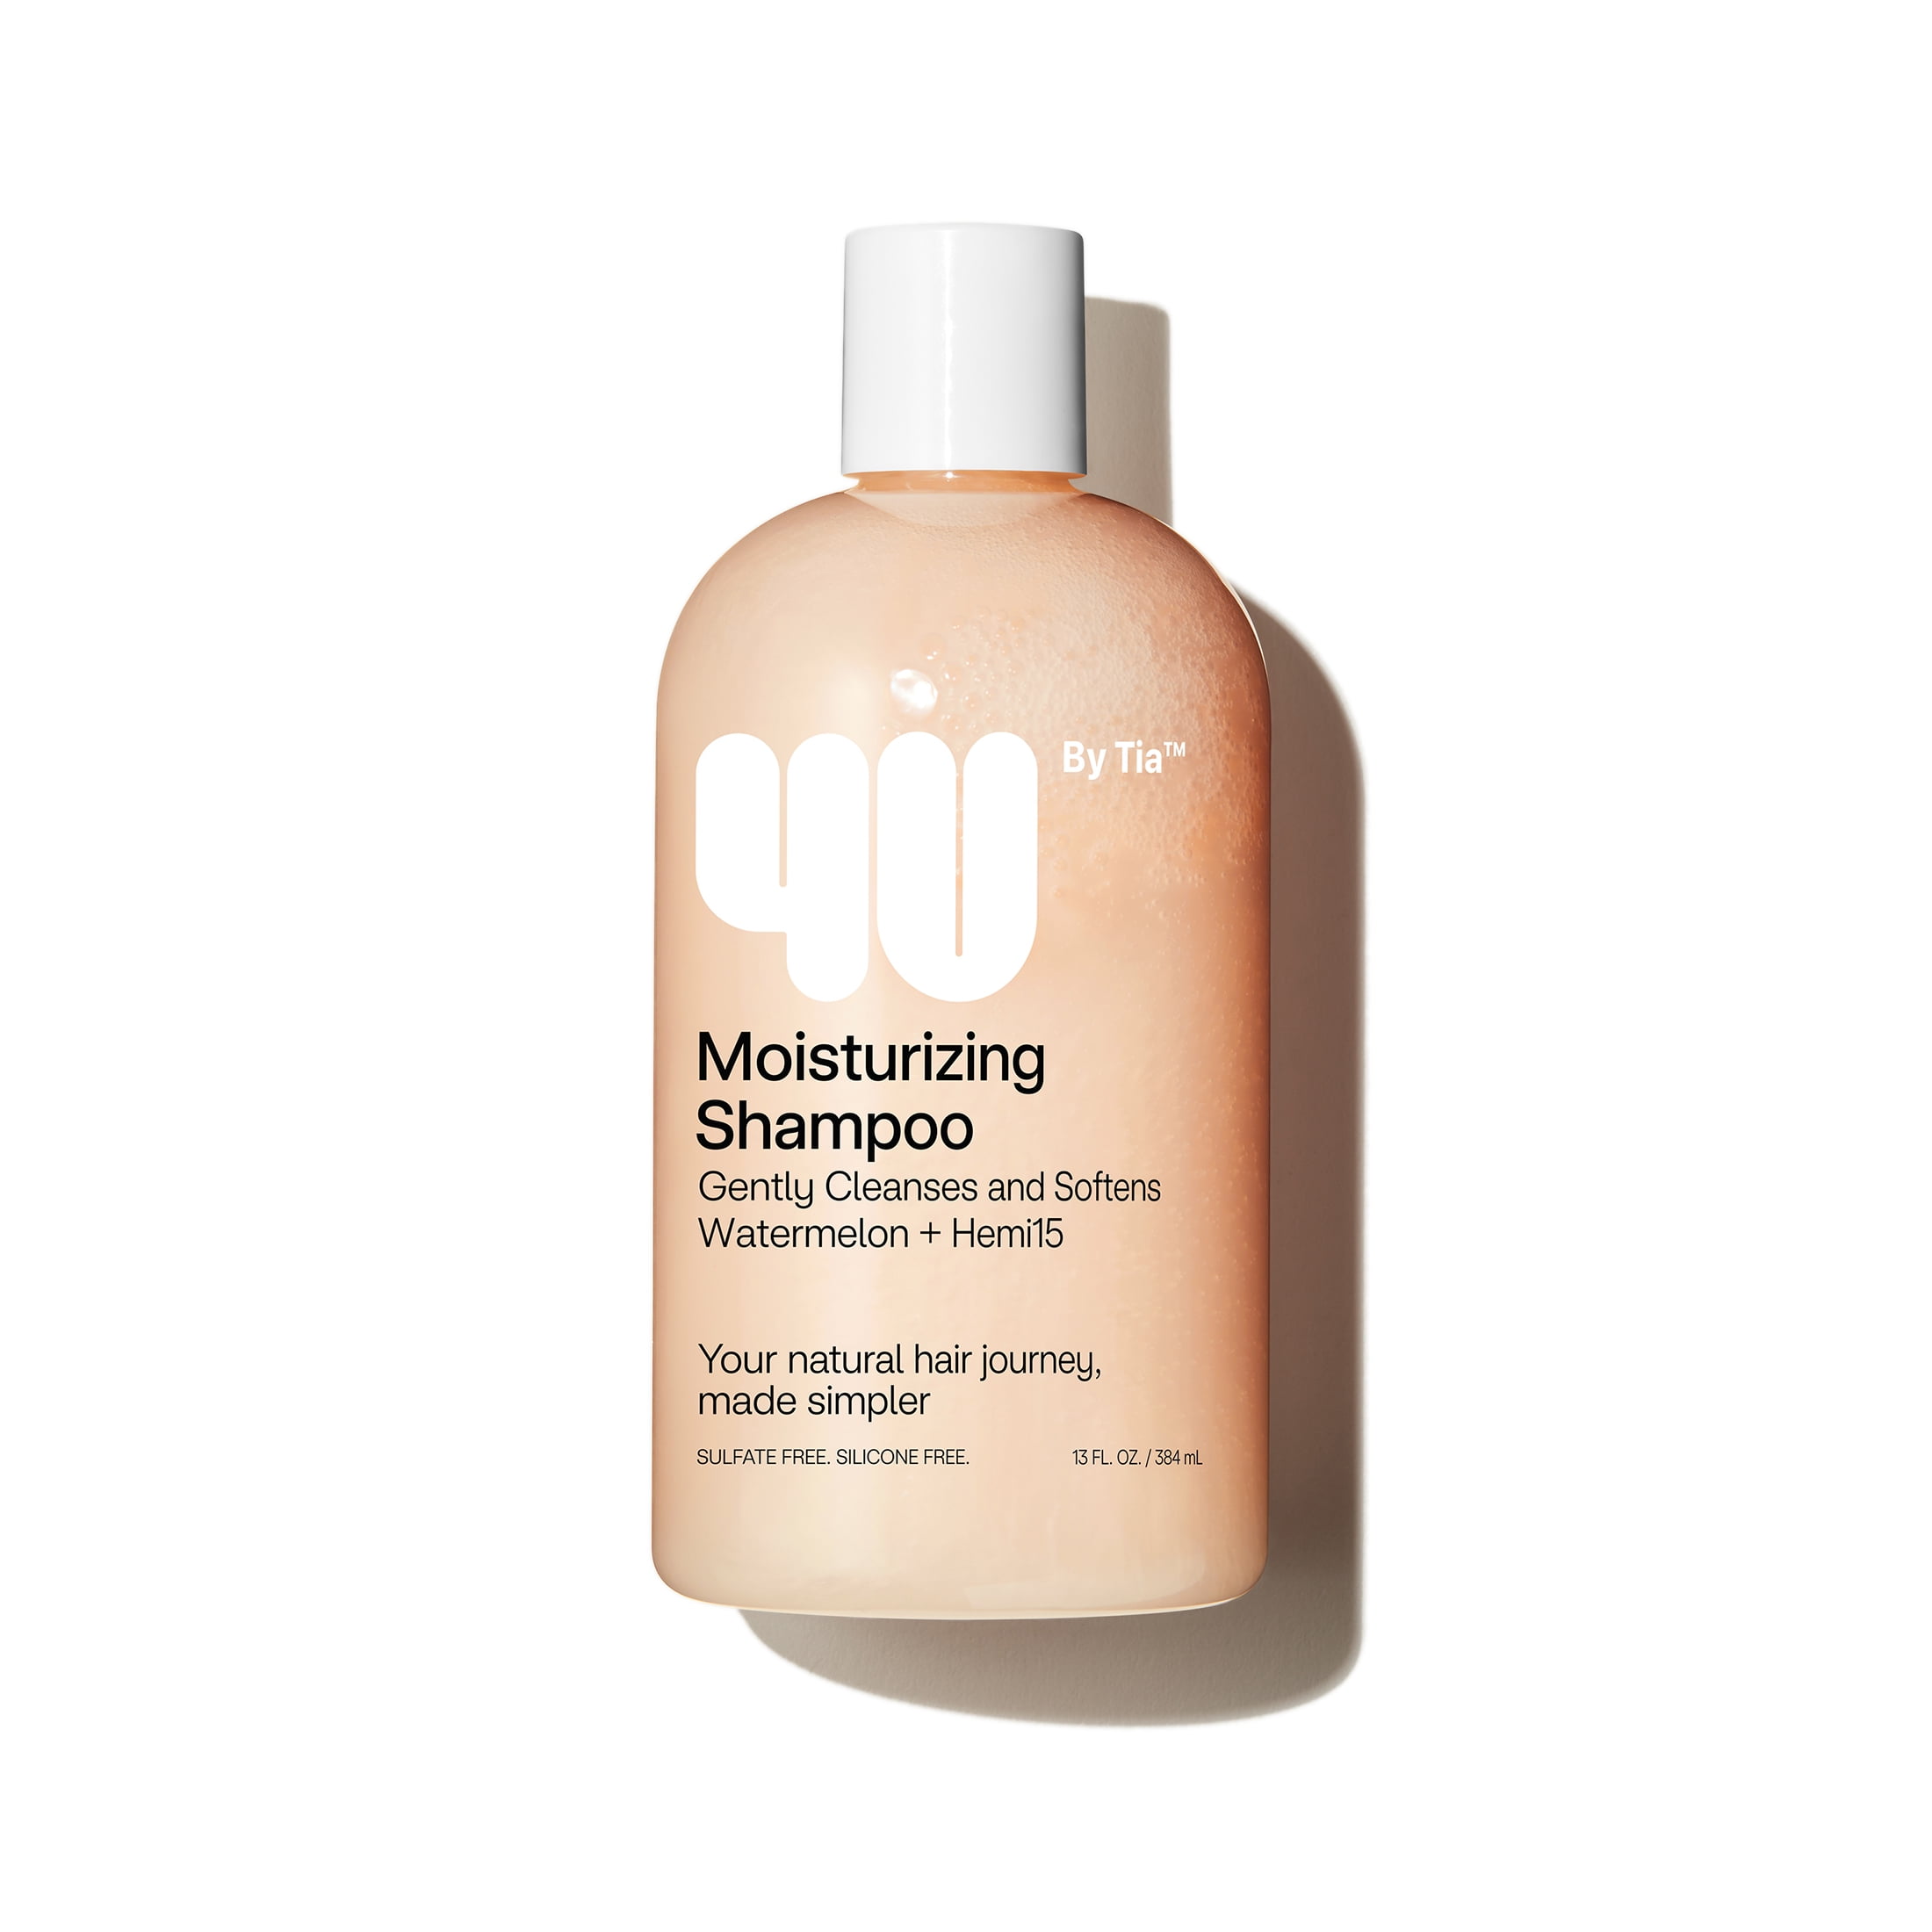 4U by Tia Moisturizing Shampoo with Watermelon and Hemi15, 13 fl oz -  